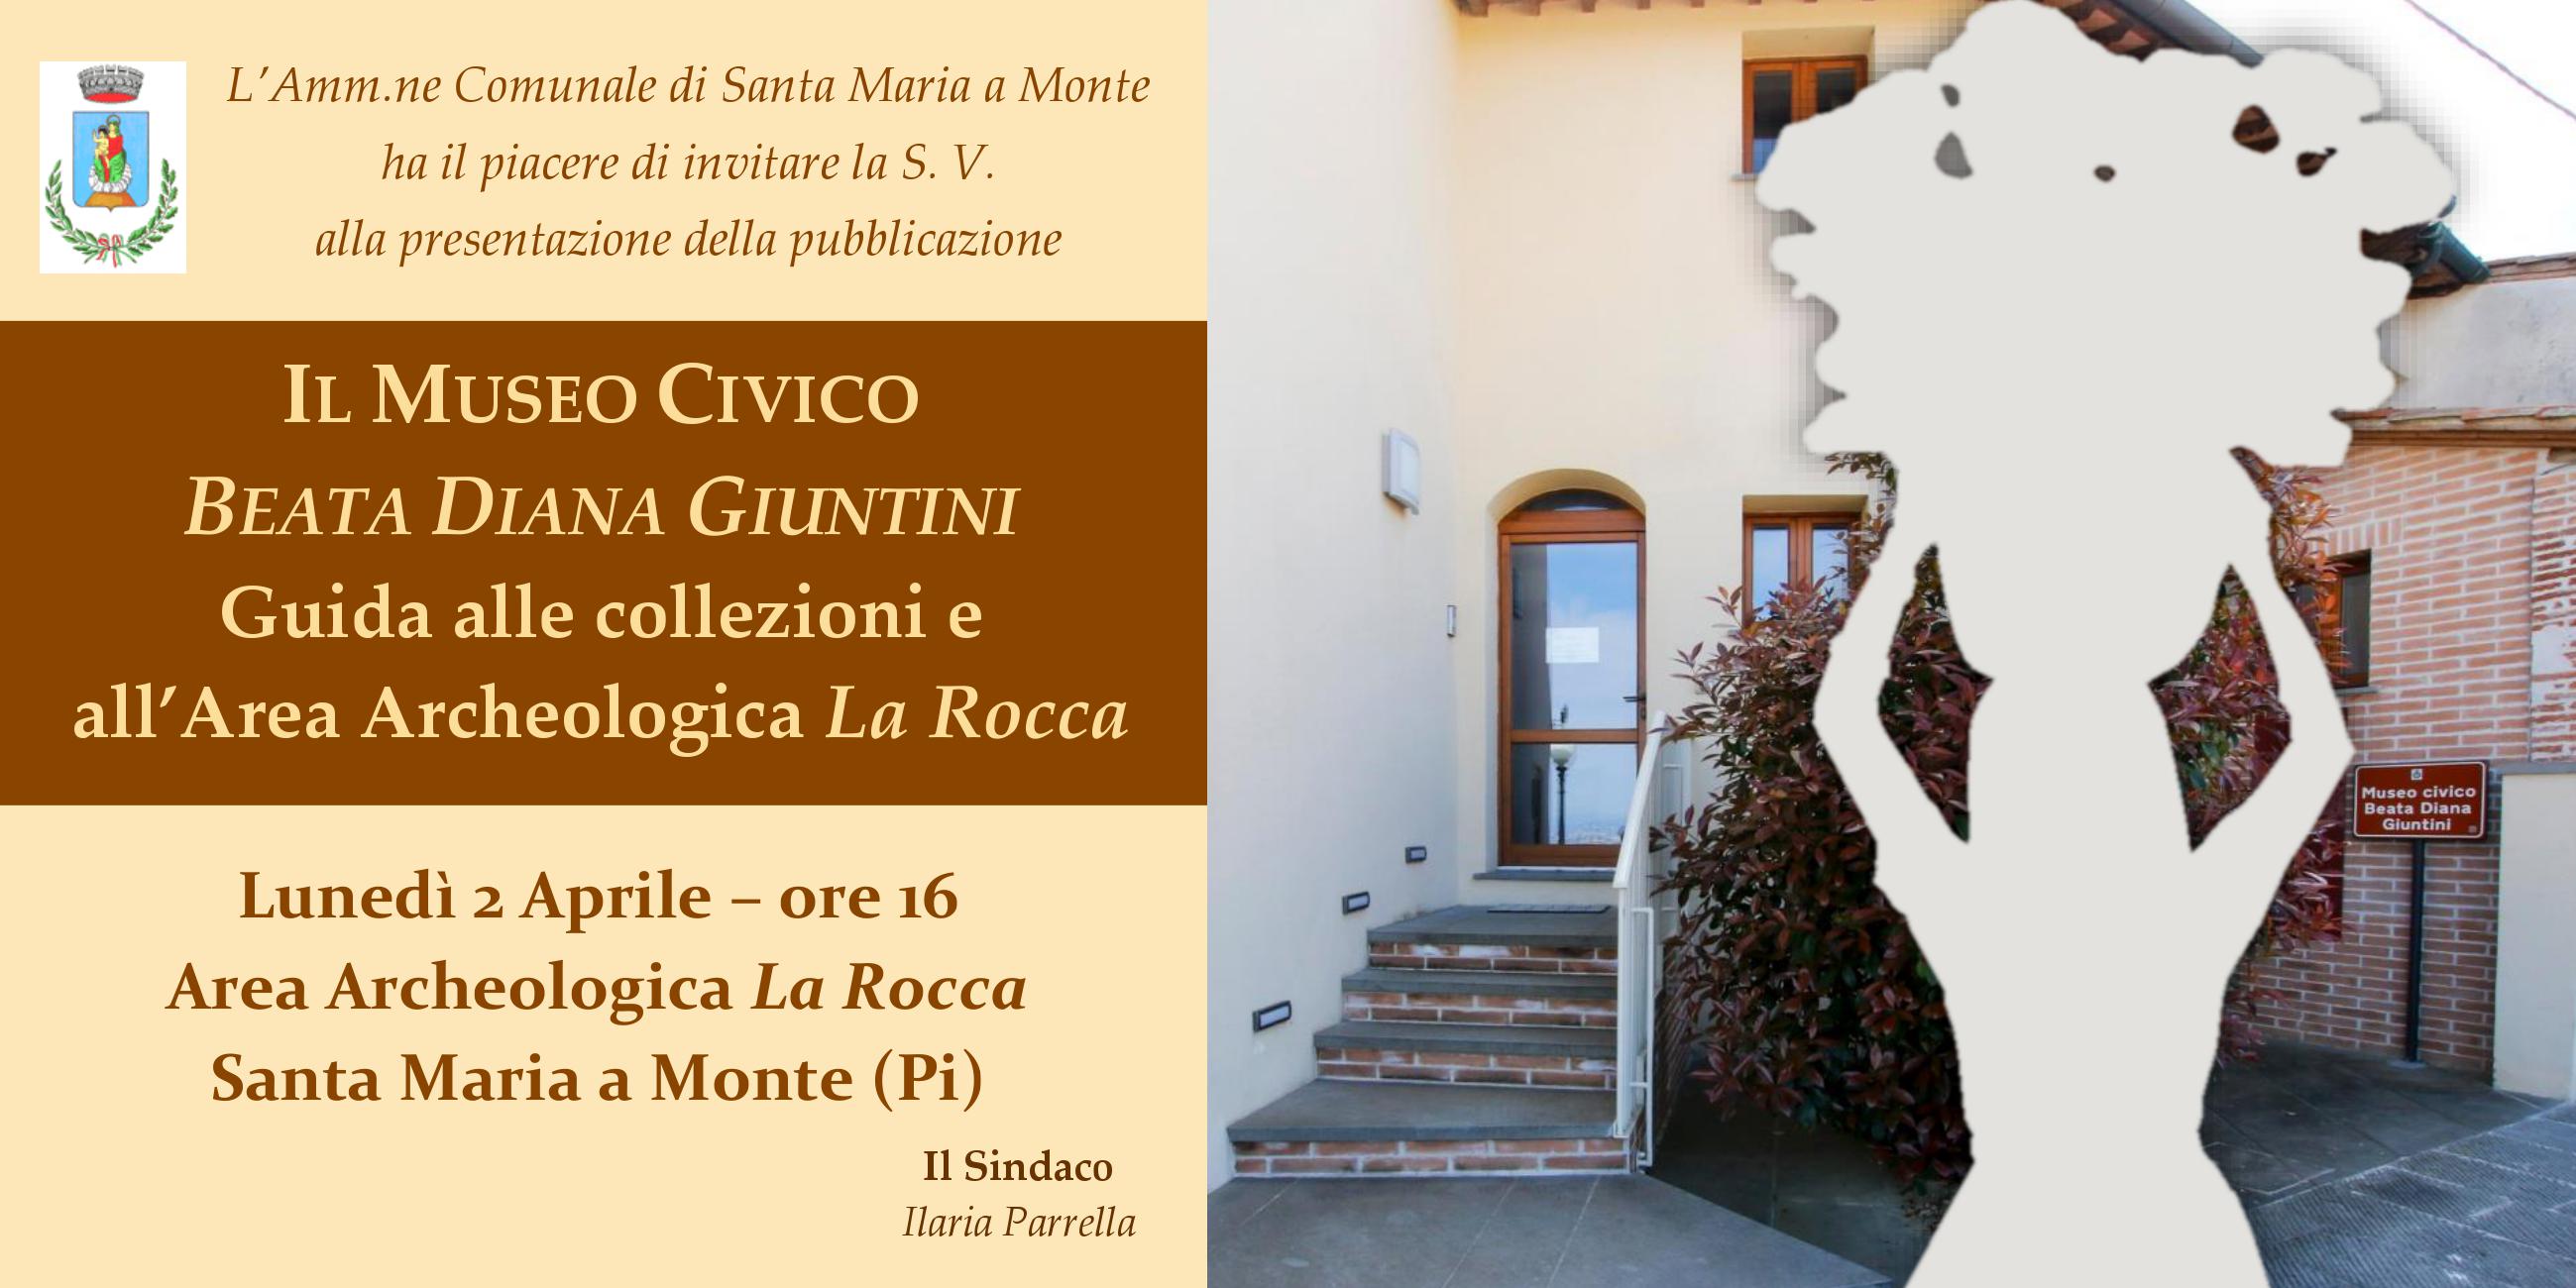 Lunedì 2 Aprile - Presentazione della pubblicazione "Il Museo Civico Beata Diana Giuntini" al Parco Archeologico